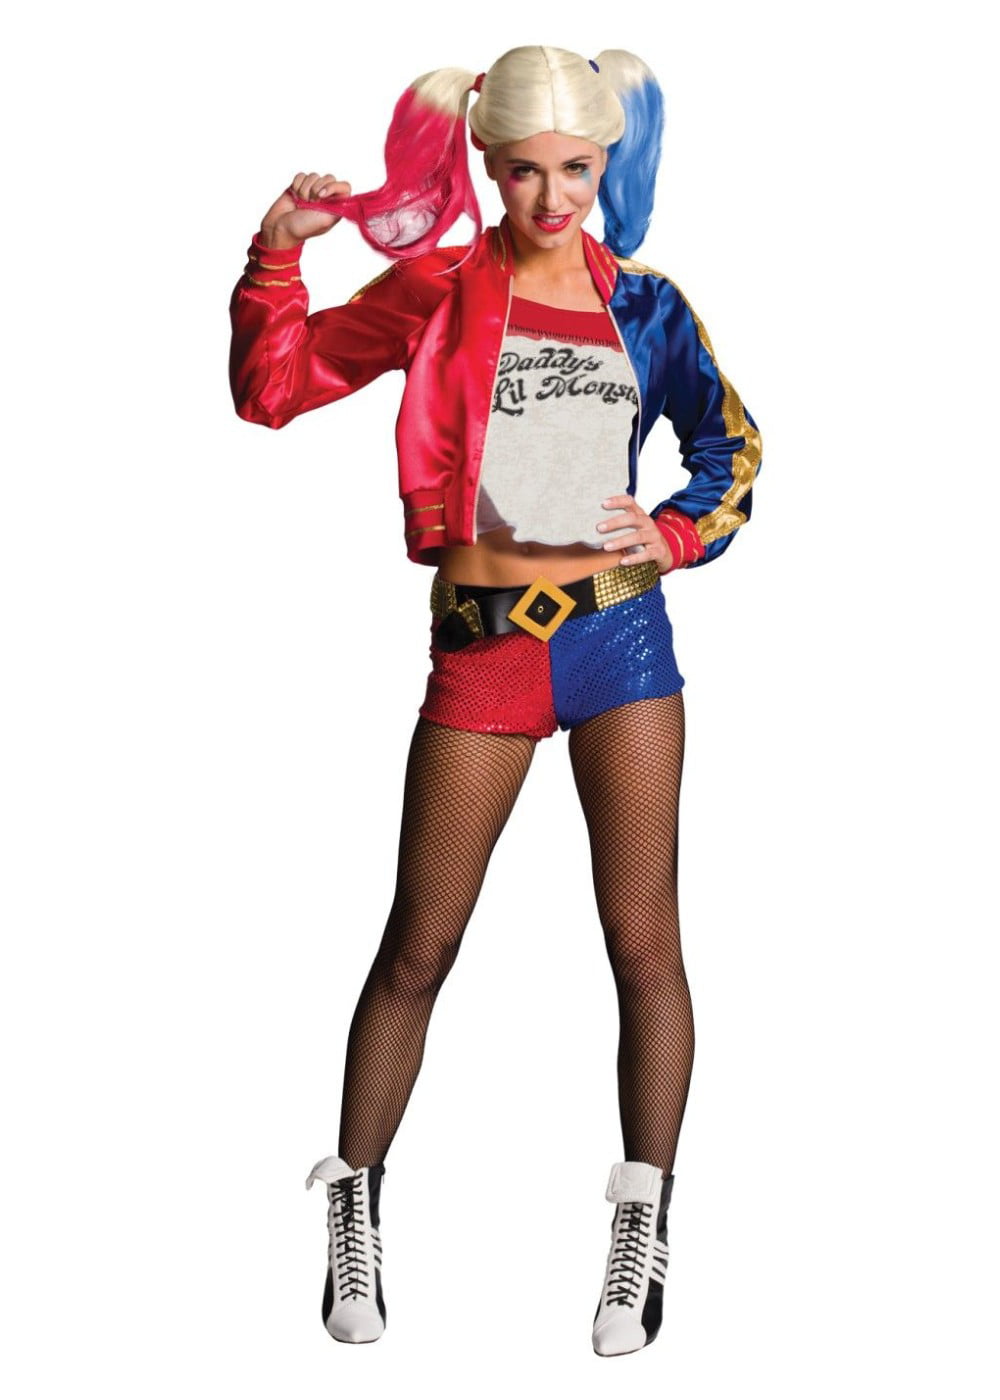 Frauen Cosplay Kostüme Sets für Halloween Party Karneval Cosplay S OPM Halloween-Kostüm für Erwachsene Harley Quinn Suicide Squad Sets